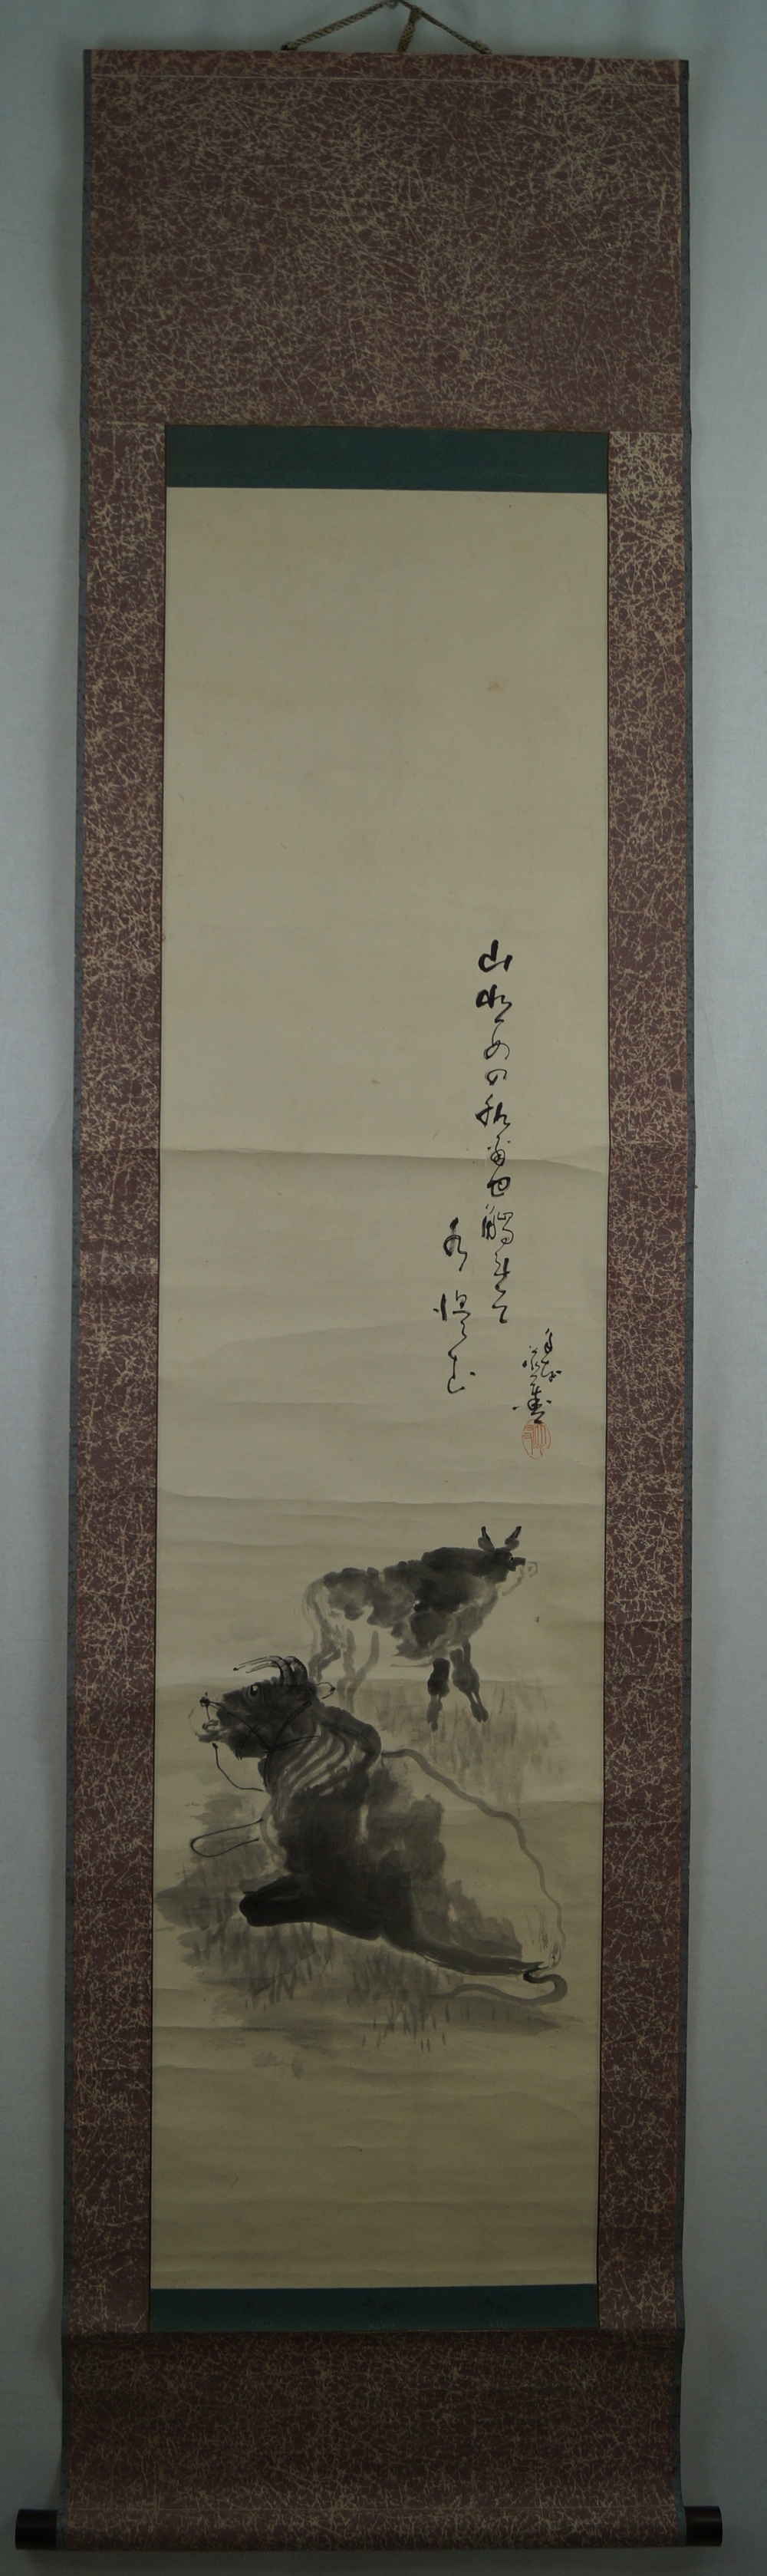 Zwei Stiere - Japanisches Rollgemälde (Kakejiku)